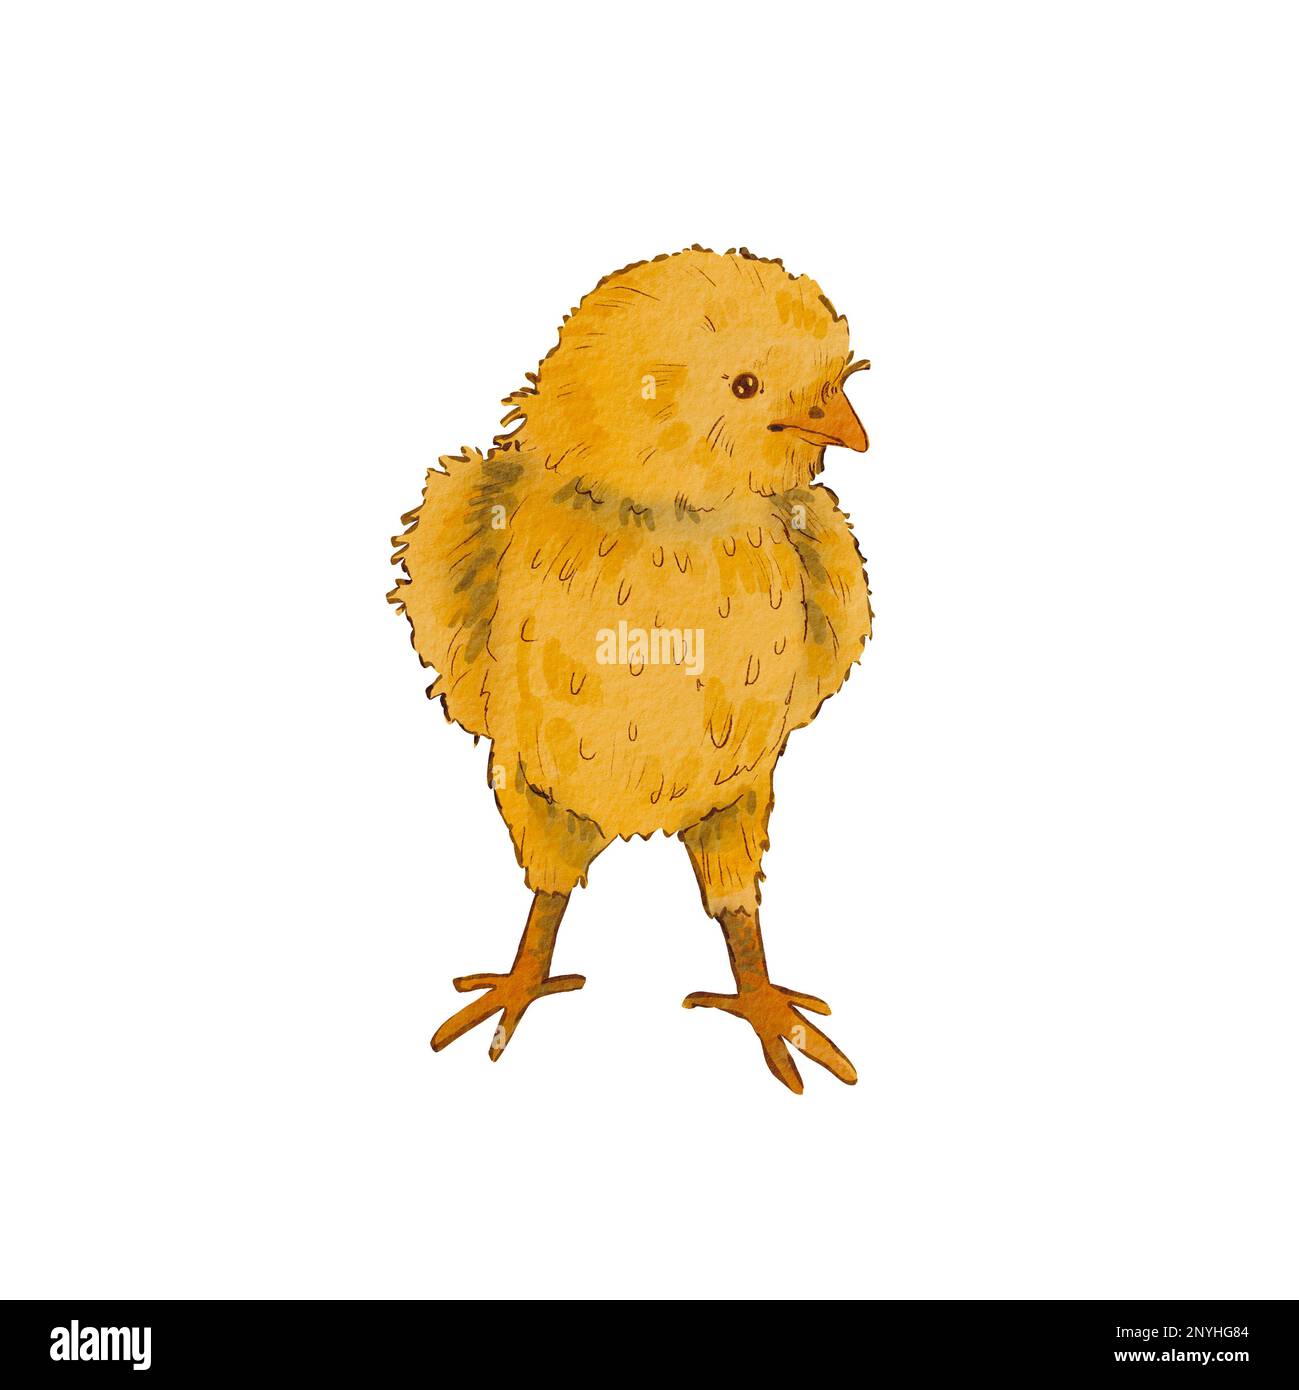 Poulet rond mignon isolé sur fond blanc. Illustration aquarelle d'un poulet jaune nouveau-né. Motif Pâques. Poussin doux. Convient pour les posta Banque D'Images